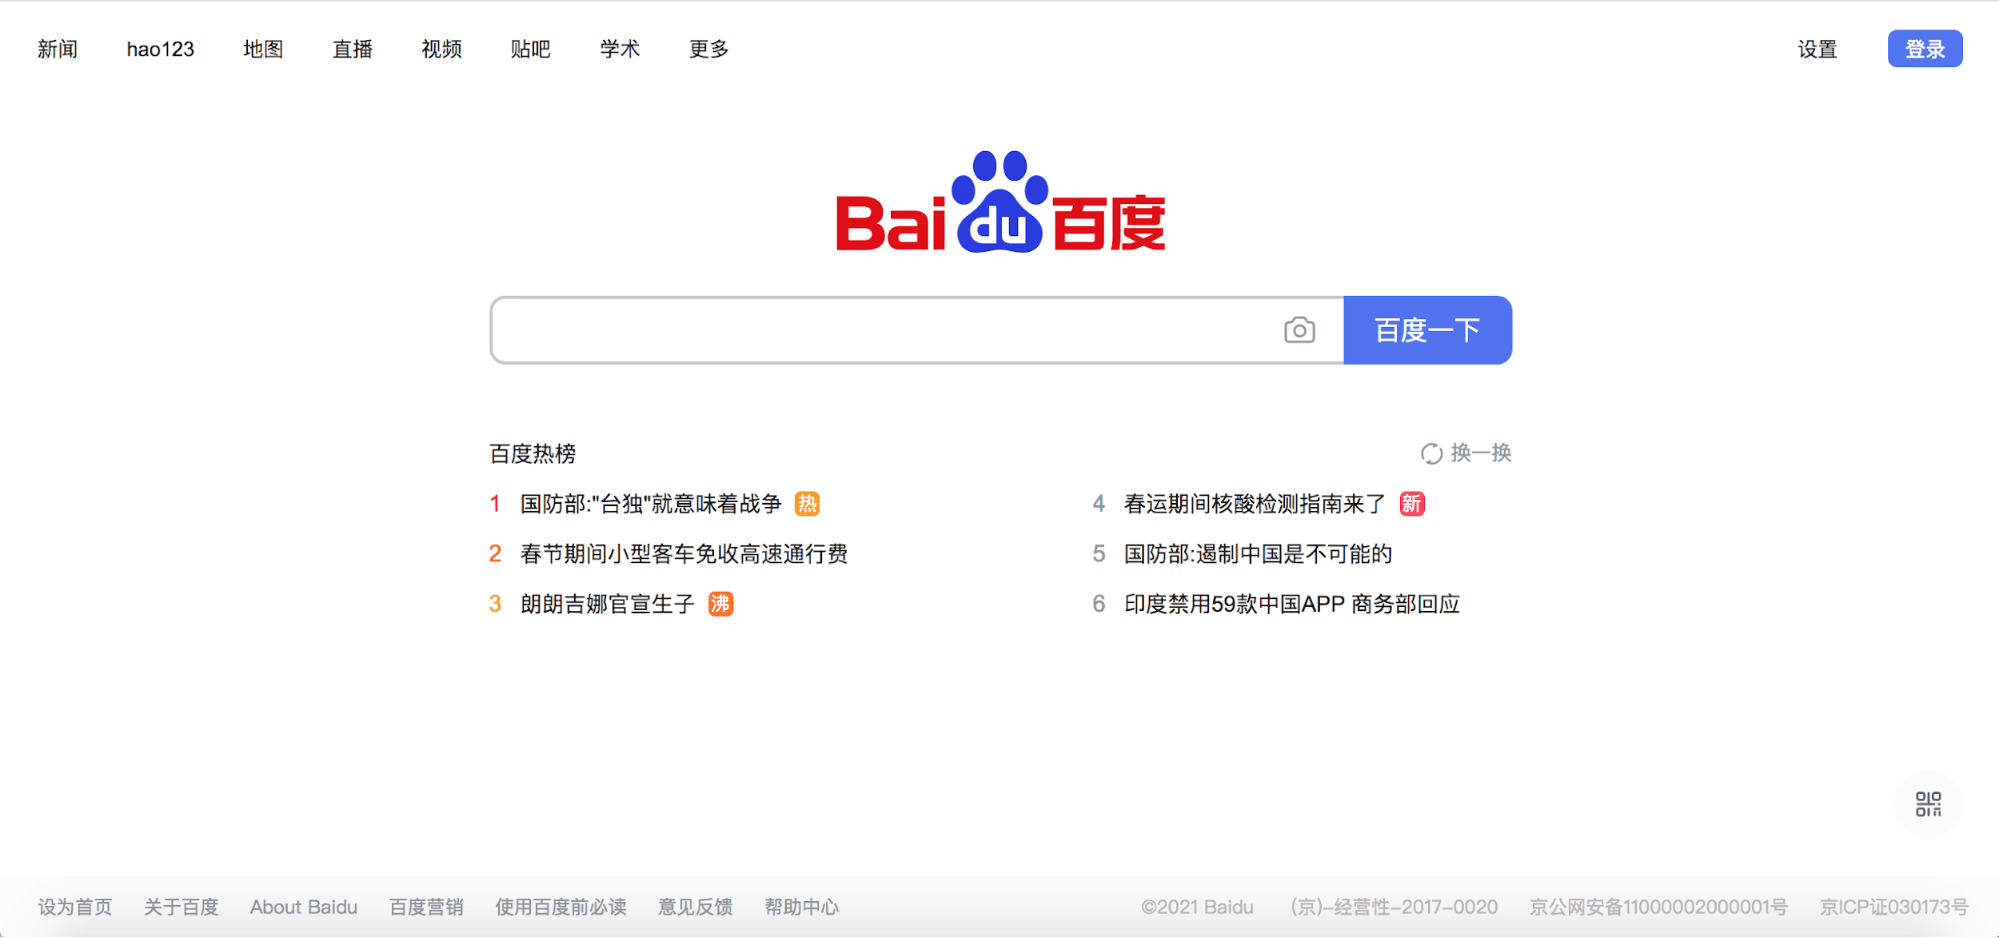 Контекстная реклама в Baidu.